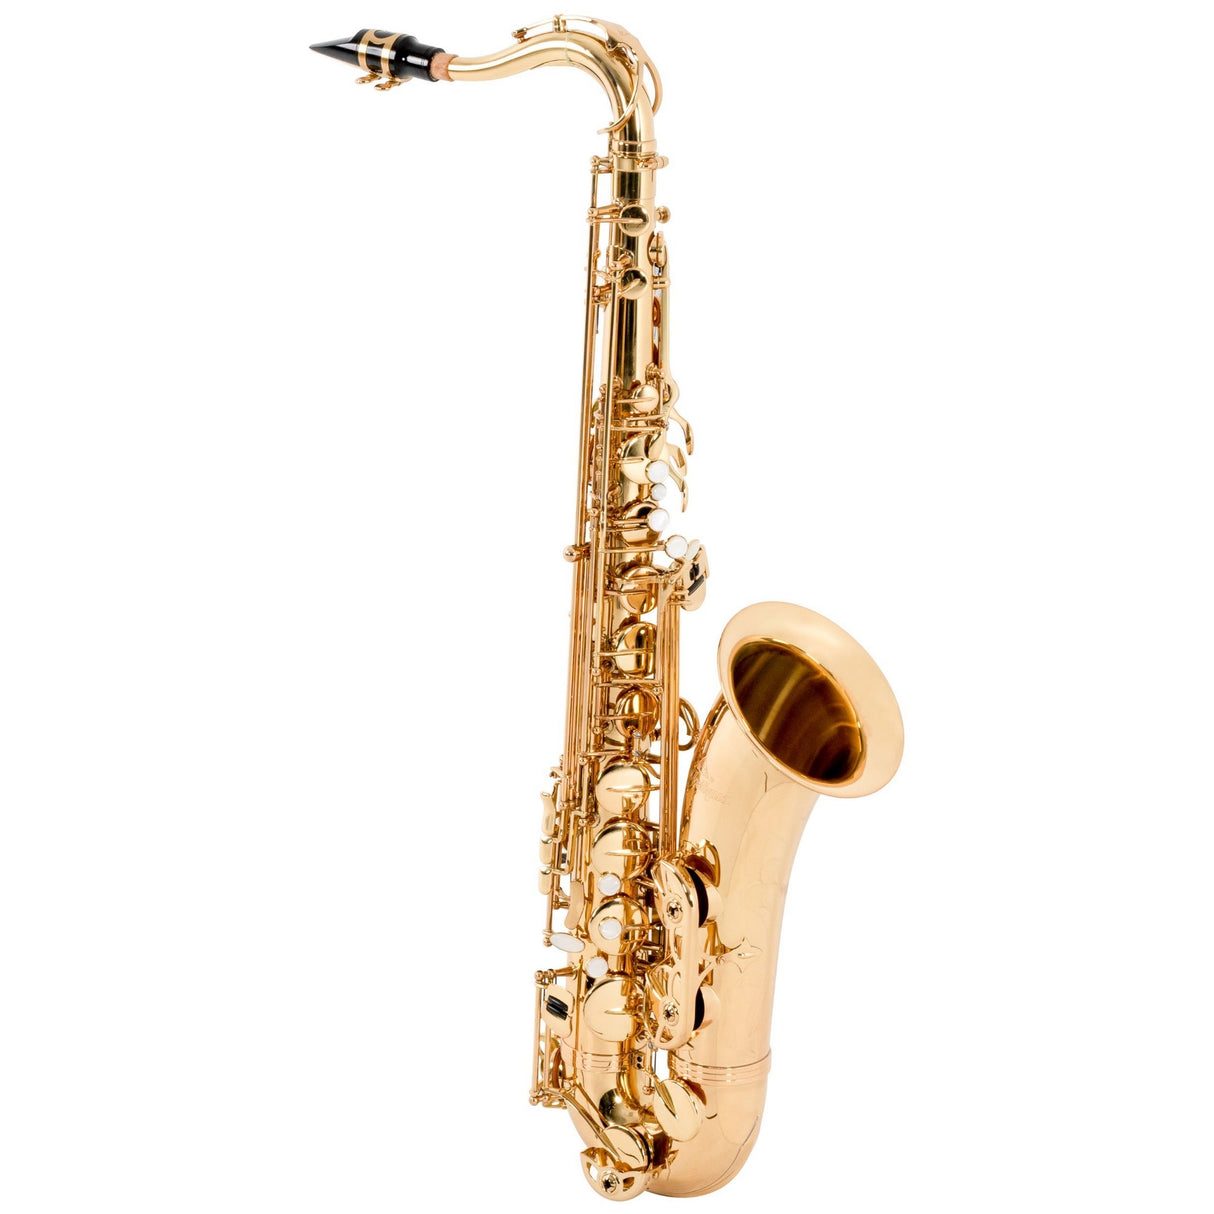 Antigua Vosi TS2155LQ Bb Tenor Saxophone, All-Lacquer Body